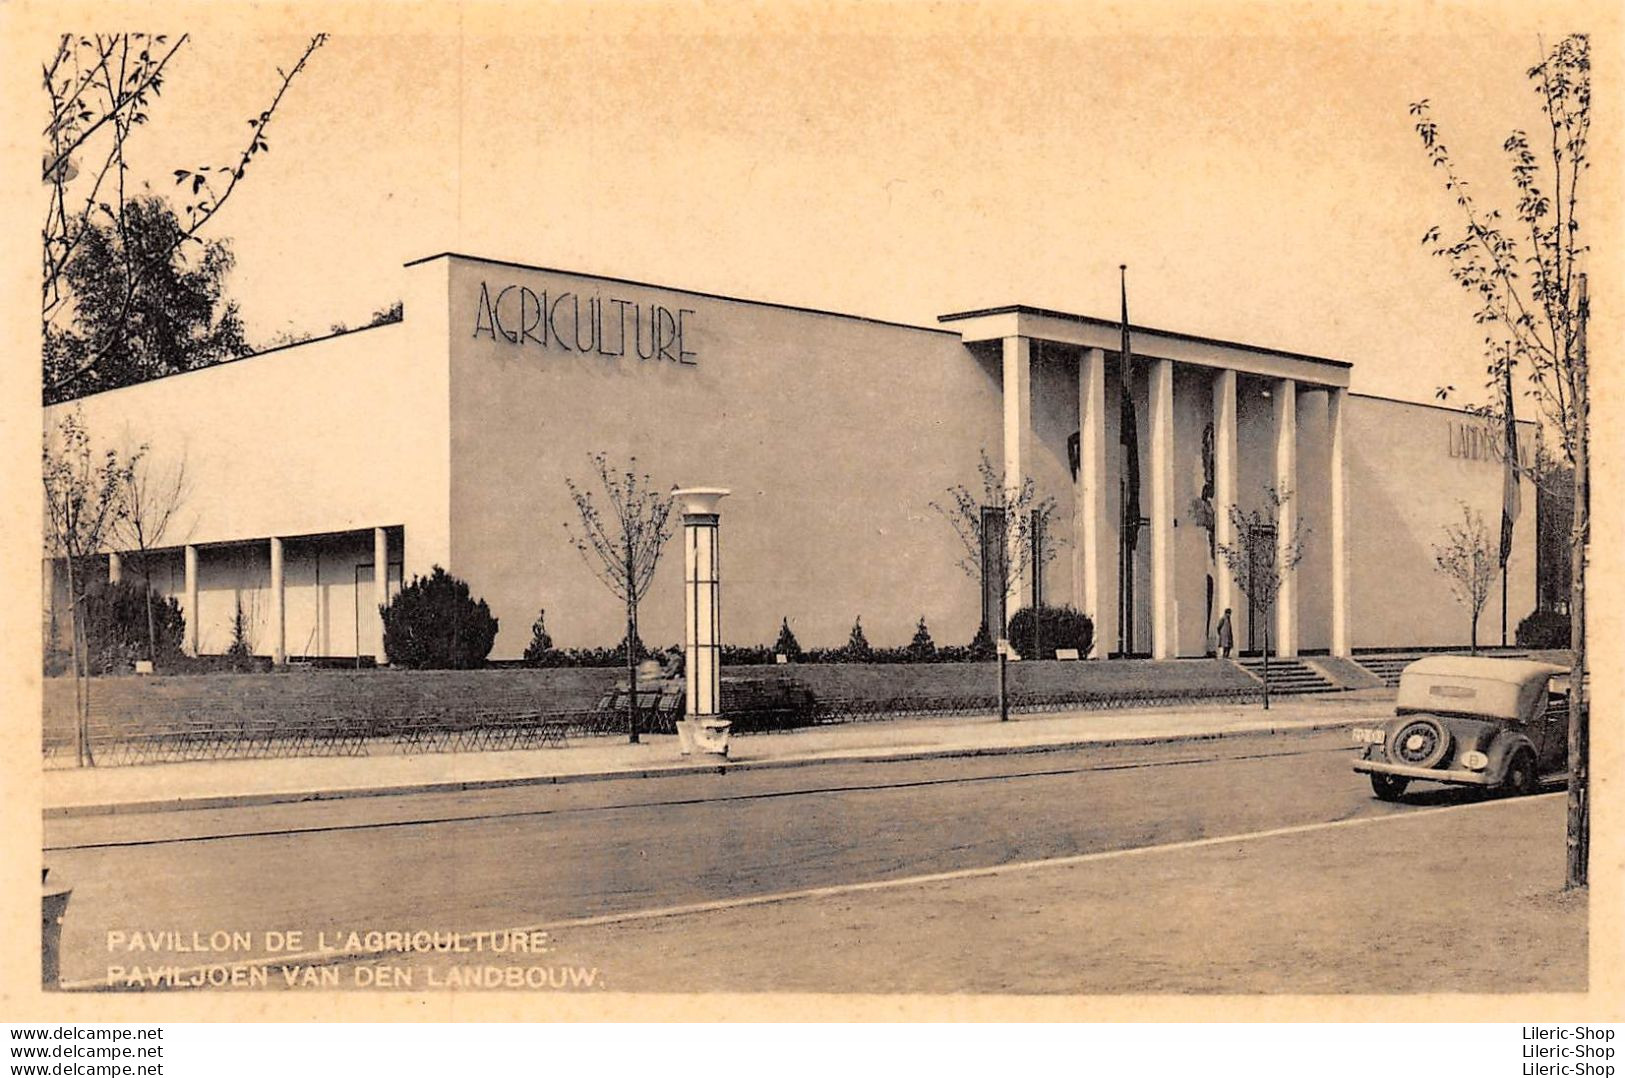 Exposition Universelle 1935 - PAVILLON DE L'AGRICULTURE / PAVILJOEN VAN DEN LANDBOUW Automobile - Universal Exhibitions